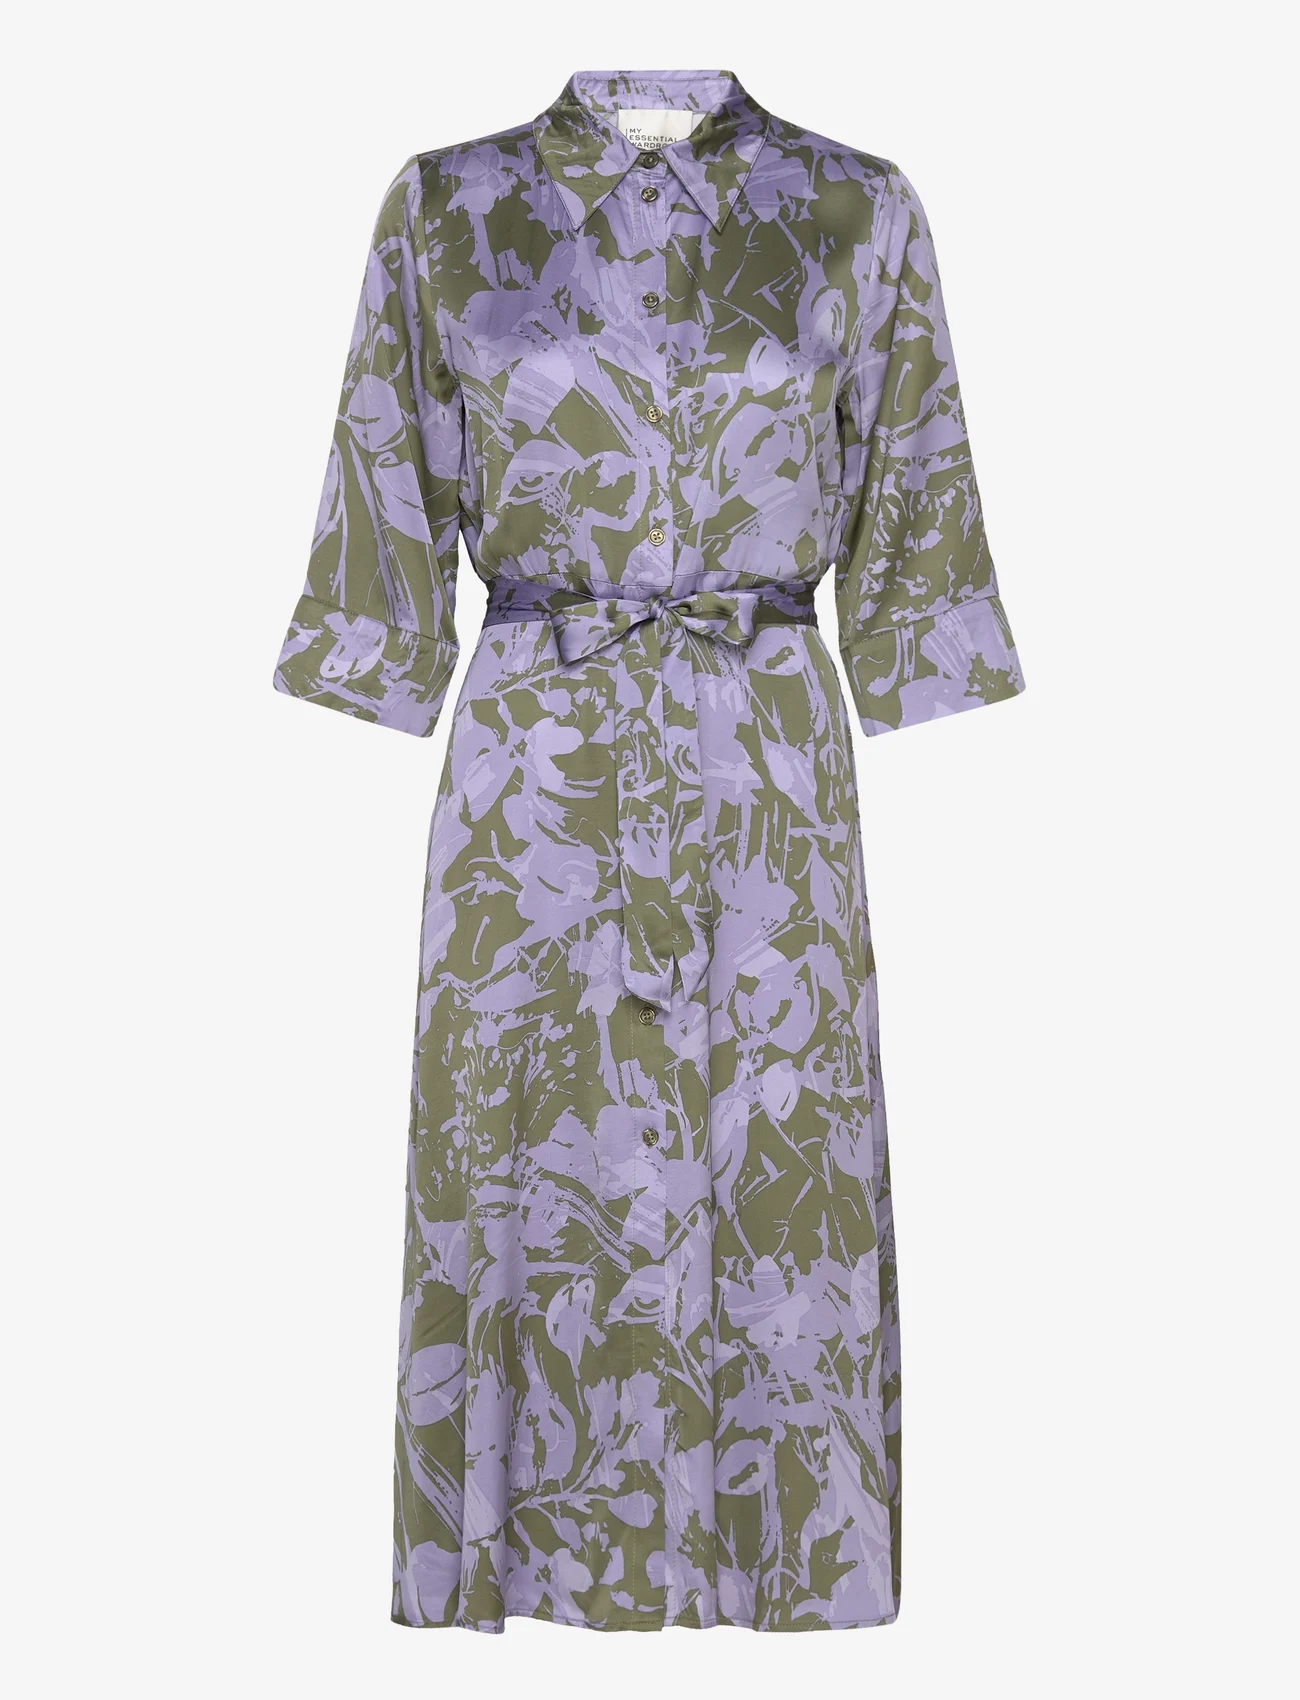 My Essential Wardrobe - MariaMW Long Shirt Dress - marškinių tipo suknelės - languid lavender print - 0